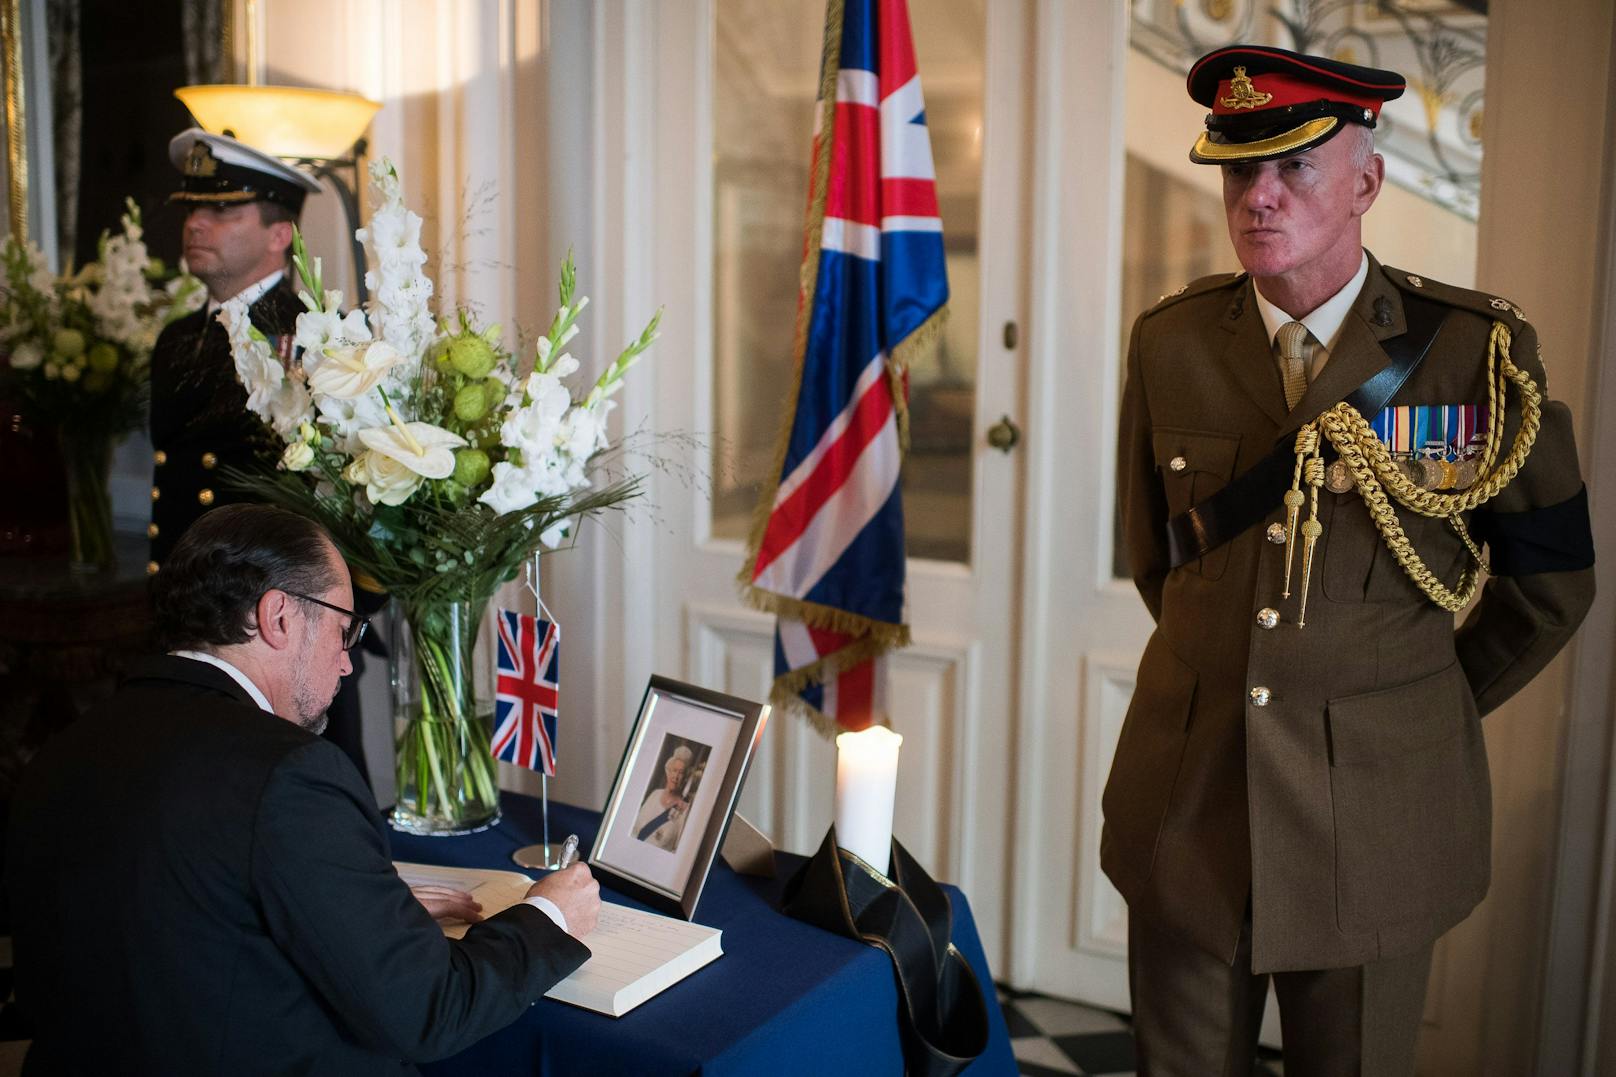 Zu Ehren der Queen: Schallenberg trägt sich in das Kondolenzbuch der britischen Botschaft ein und hinterlässt respektvolle Zeilen.